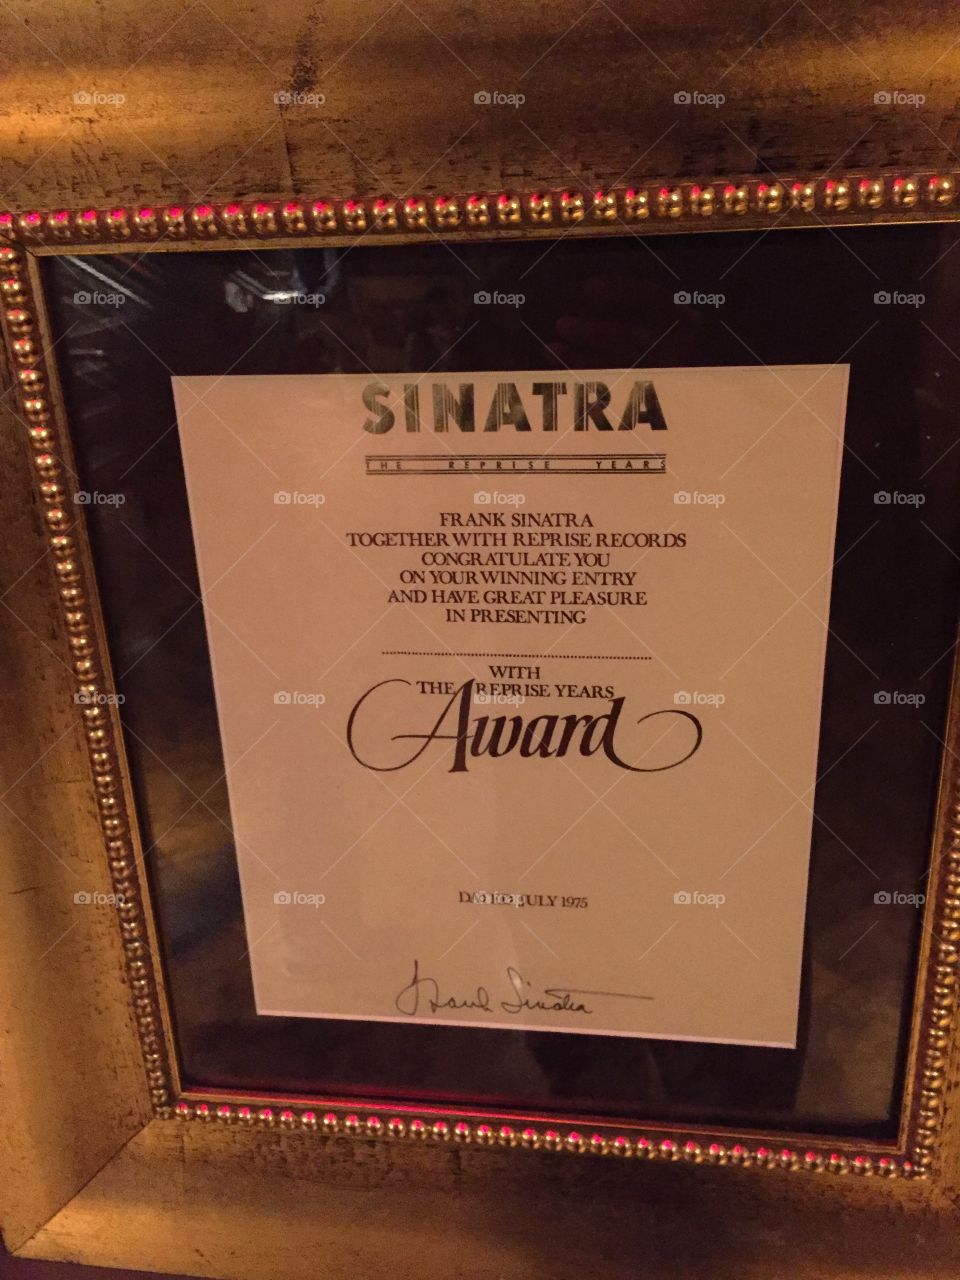 Frank Sinatra Award